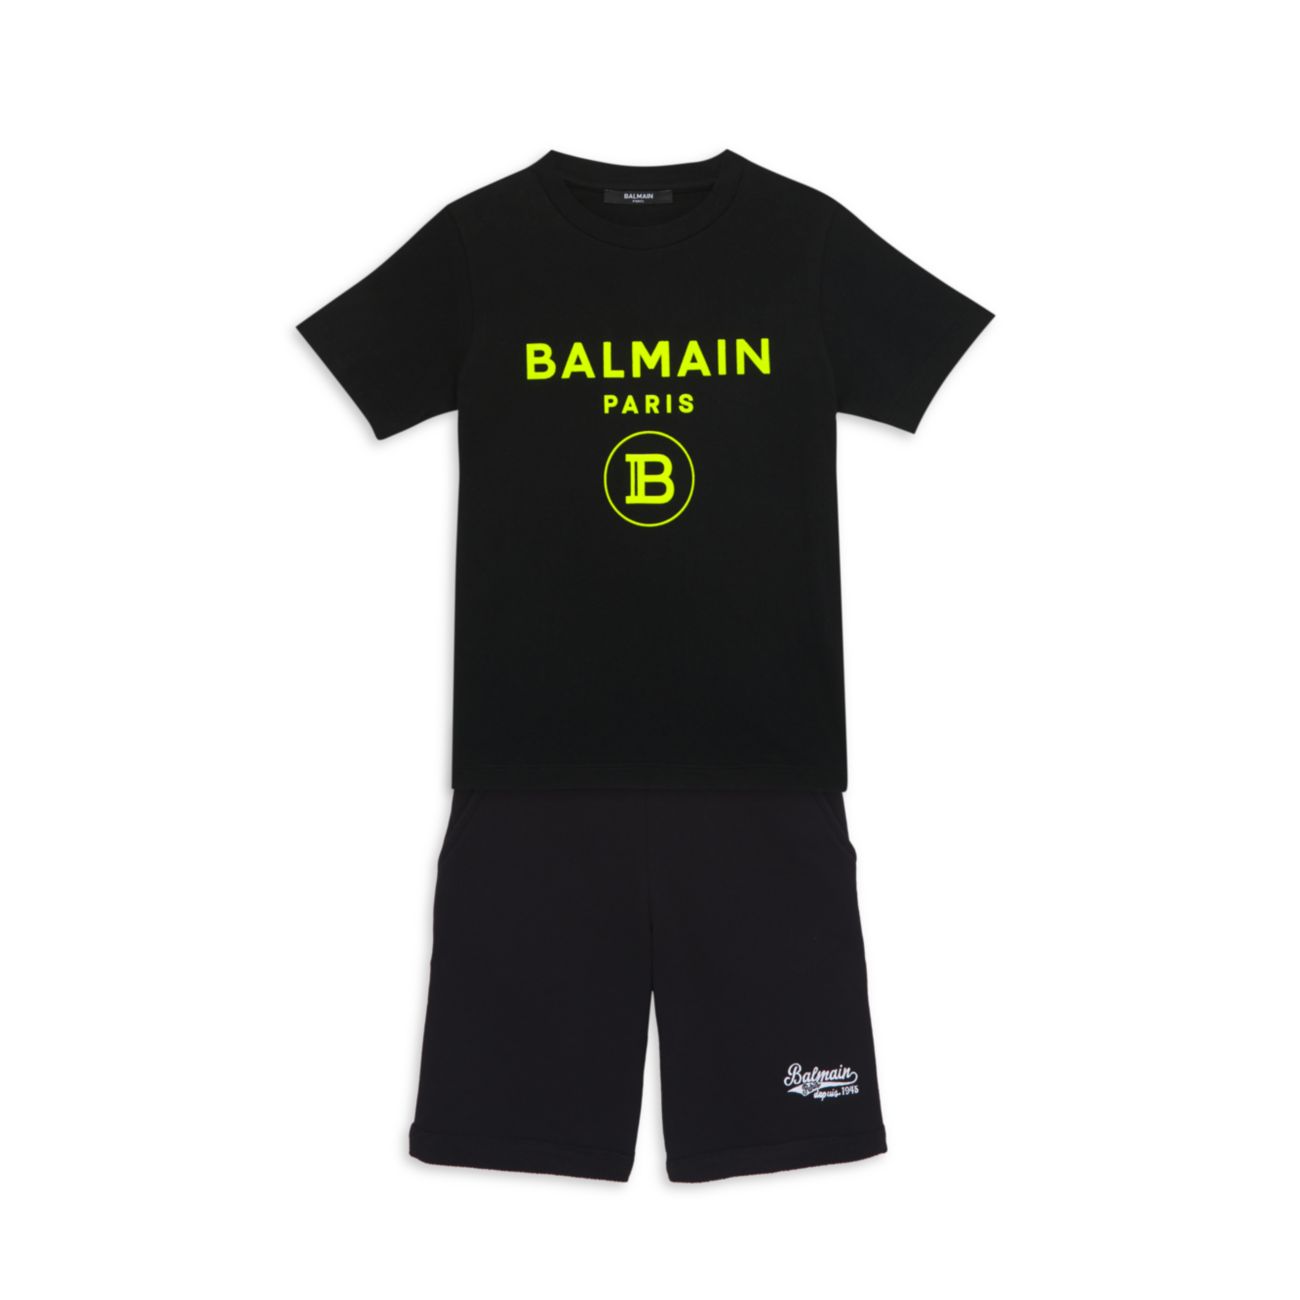 Little Kid's & amp; Детская футболка с флокированным логотипом Balmain